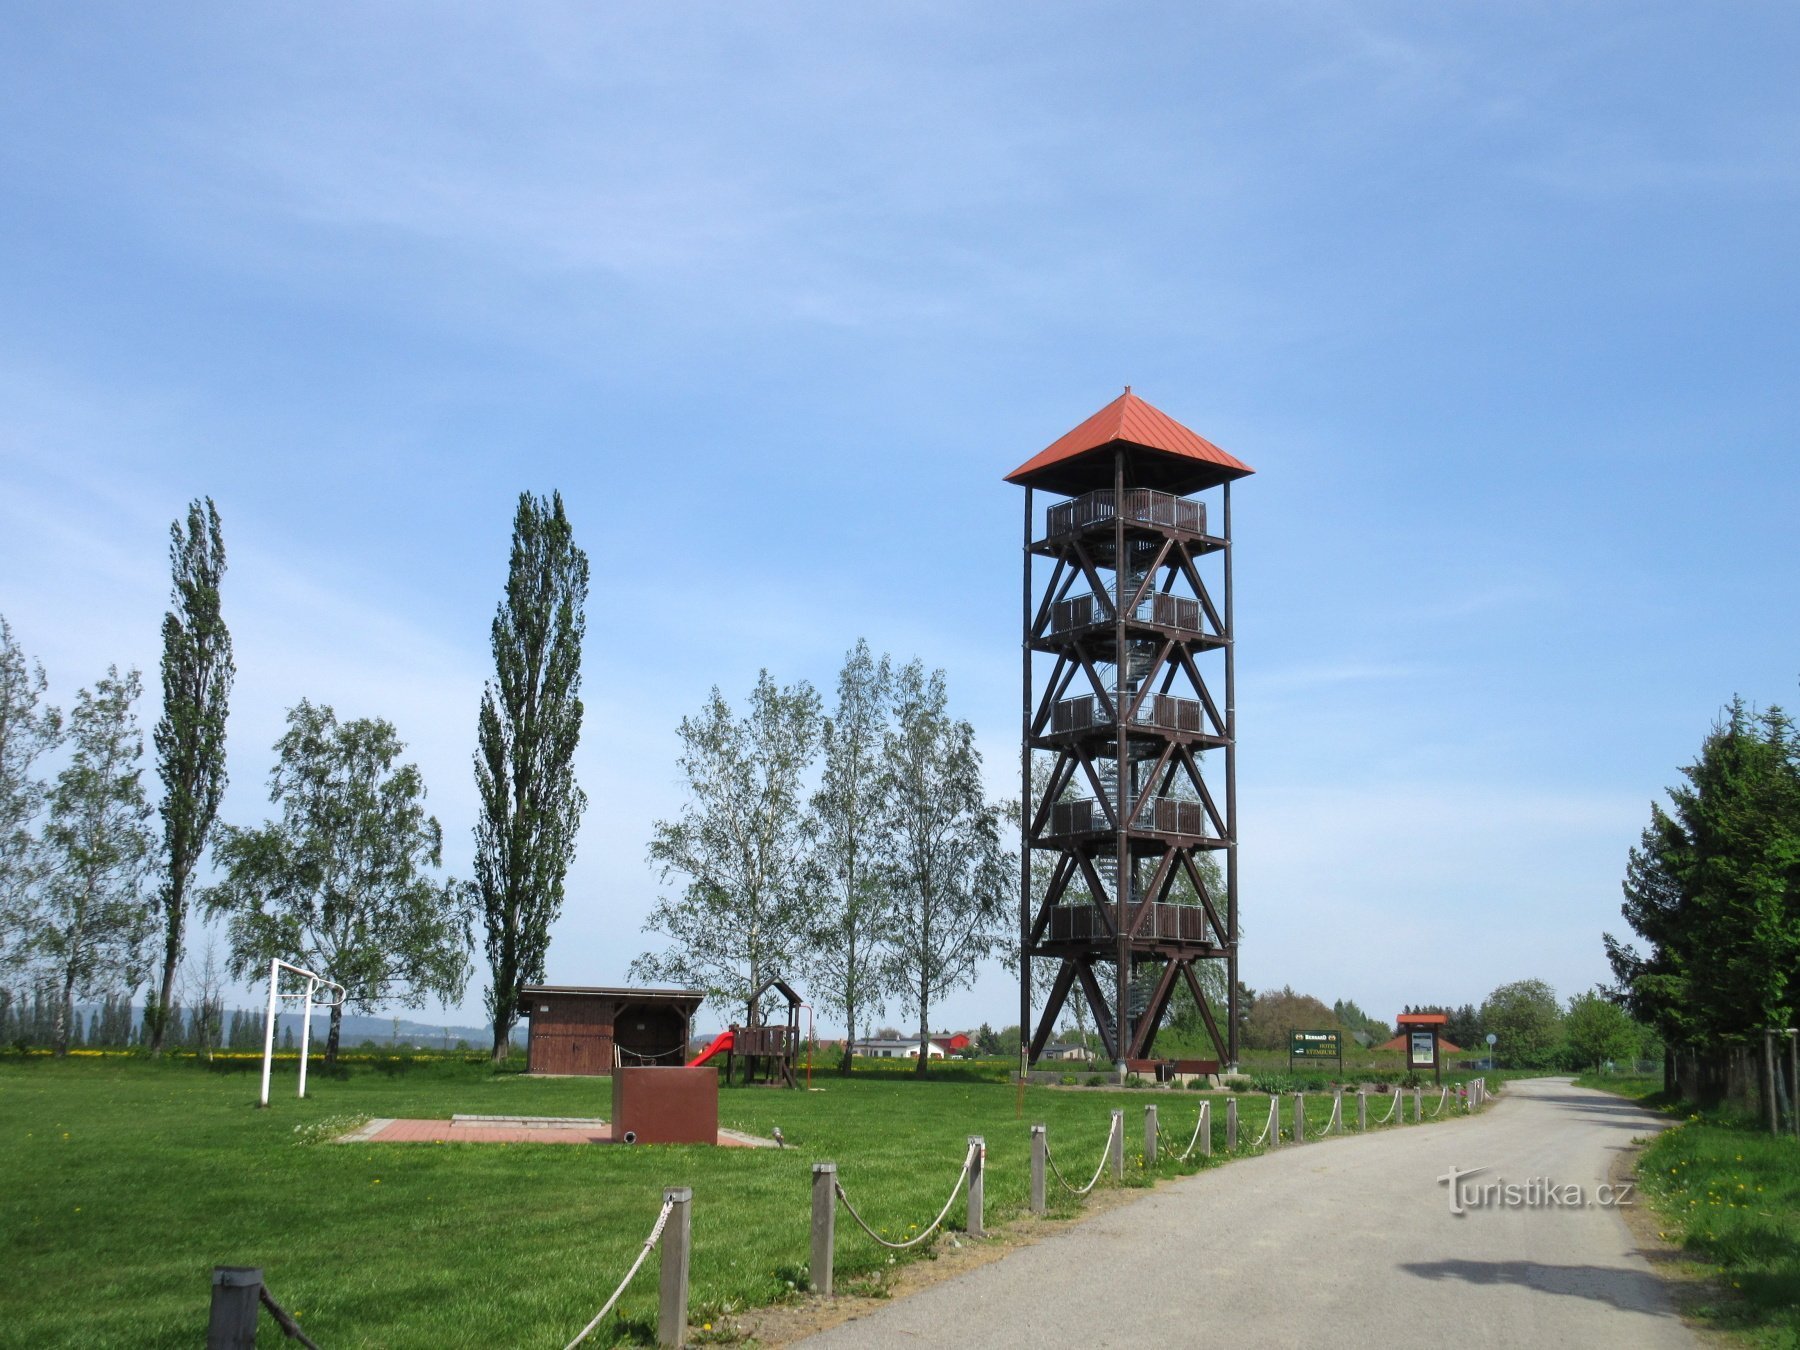 ジャーノフ – 村と見張り塔